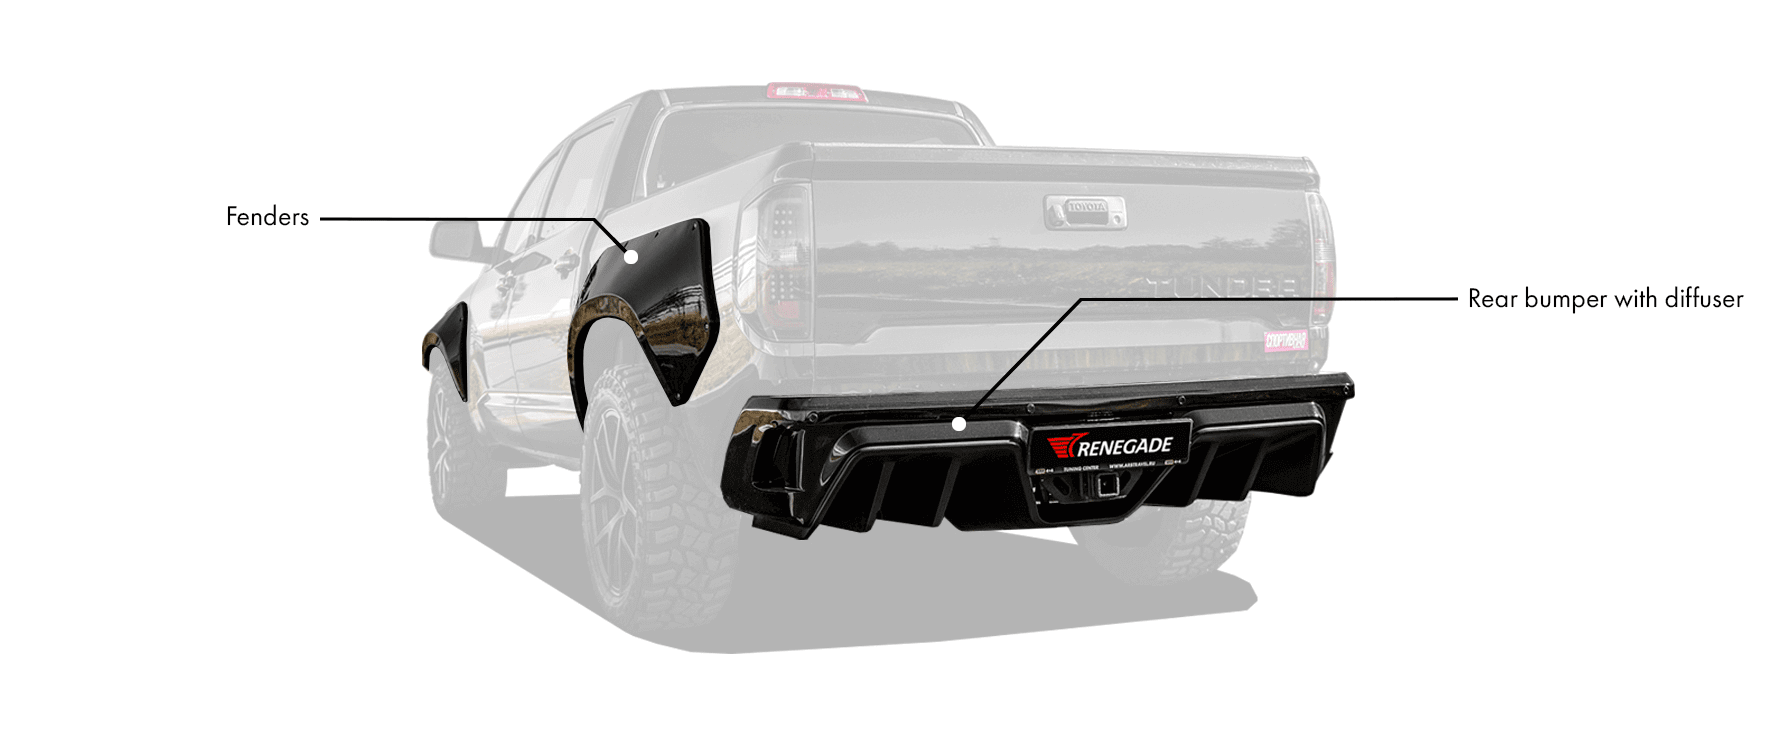 Toyota Tundra Xk50 Body Kit includes